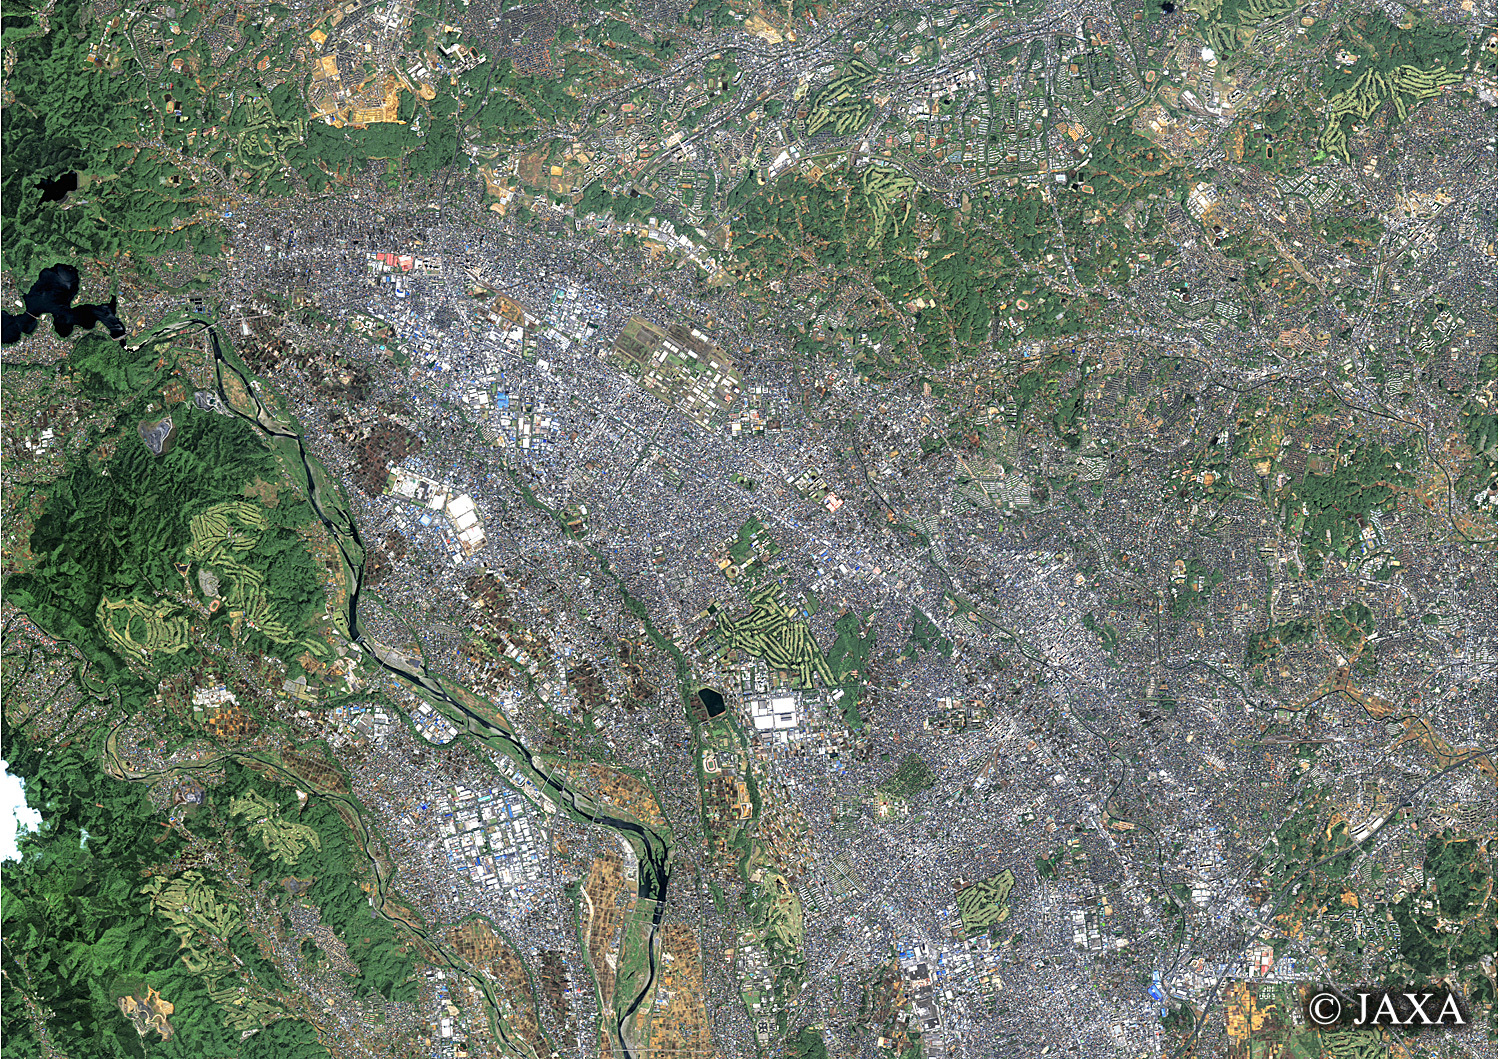 だいちから見た日本の都市 町田市:衛星画像